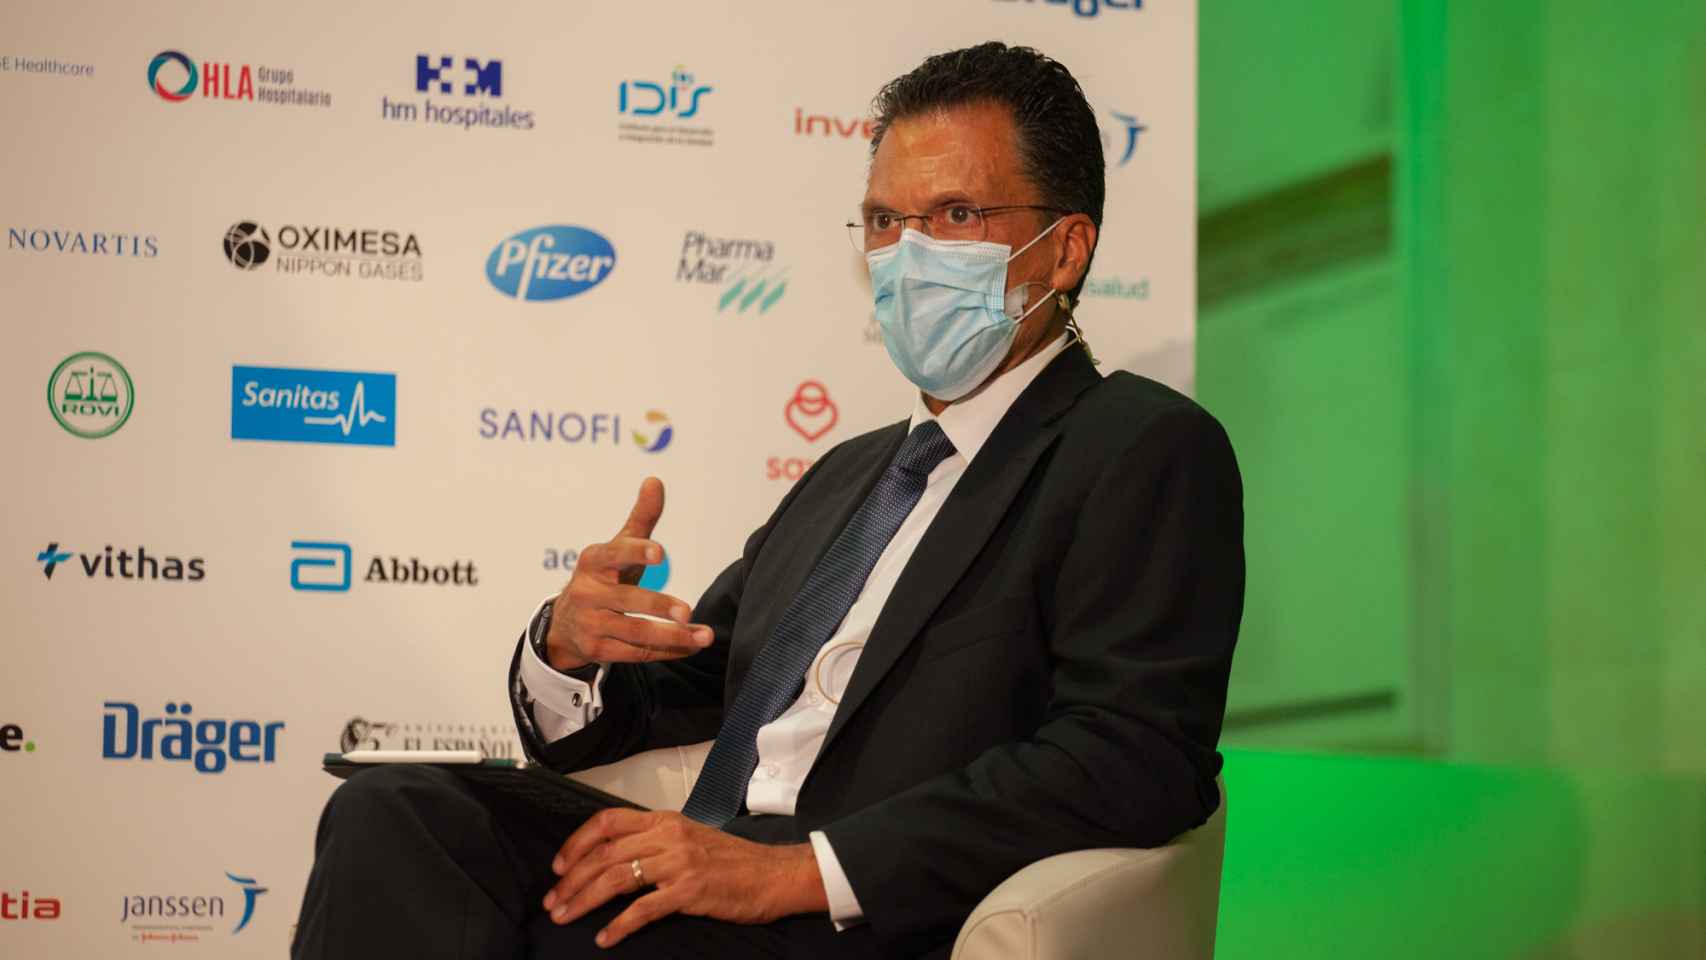 Jorge Huertas Colomina, director general de Oximesa y Nippon Gases Healthcare.